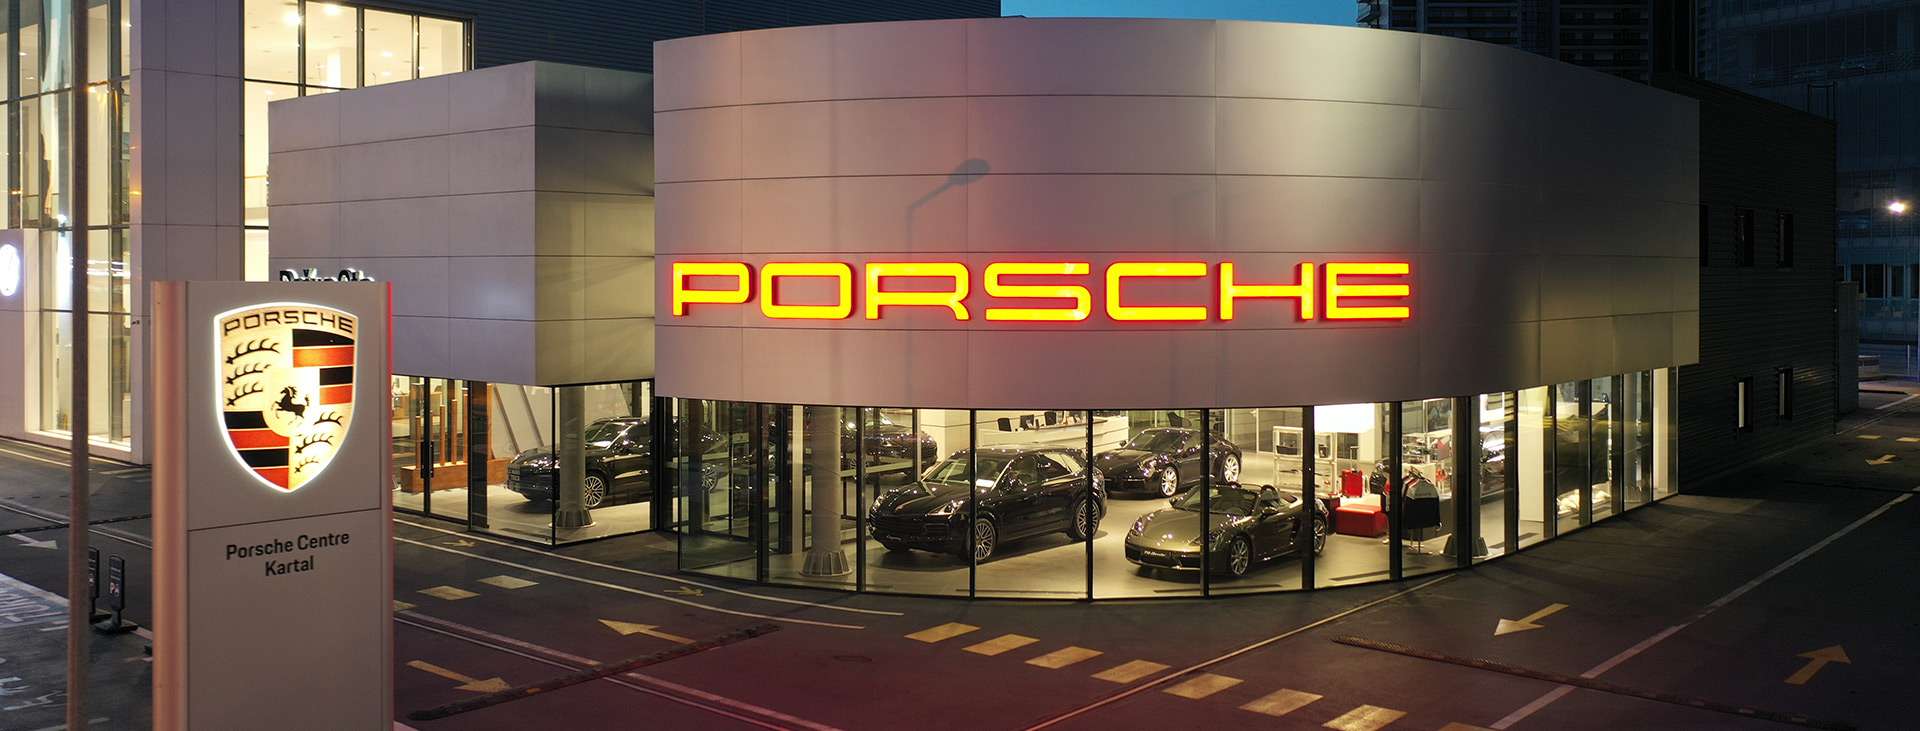 Porsche - Doğuş Oto Kartal Porsche